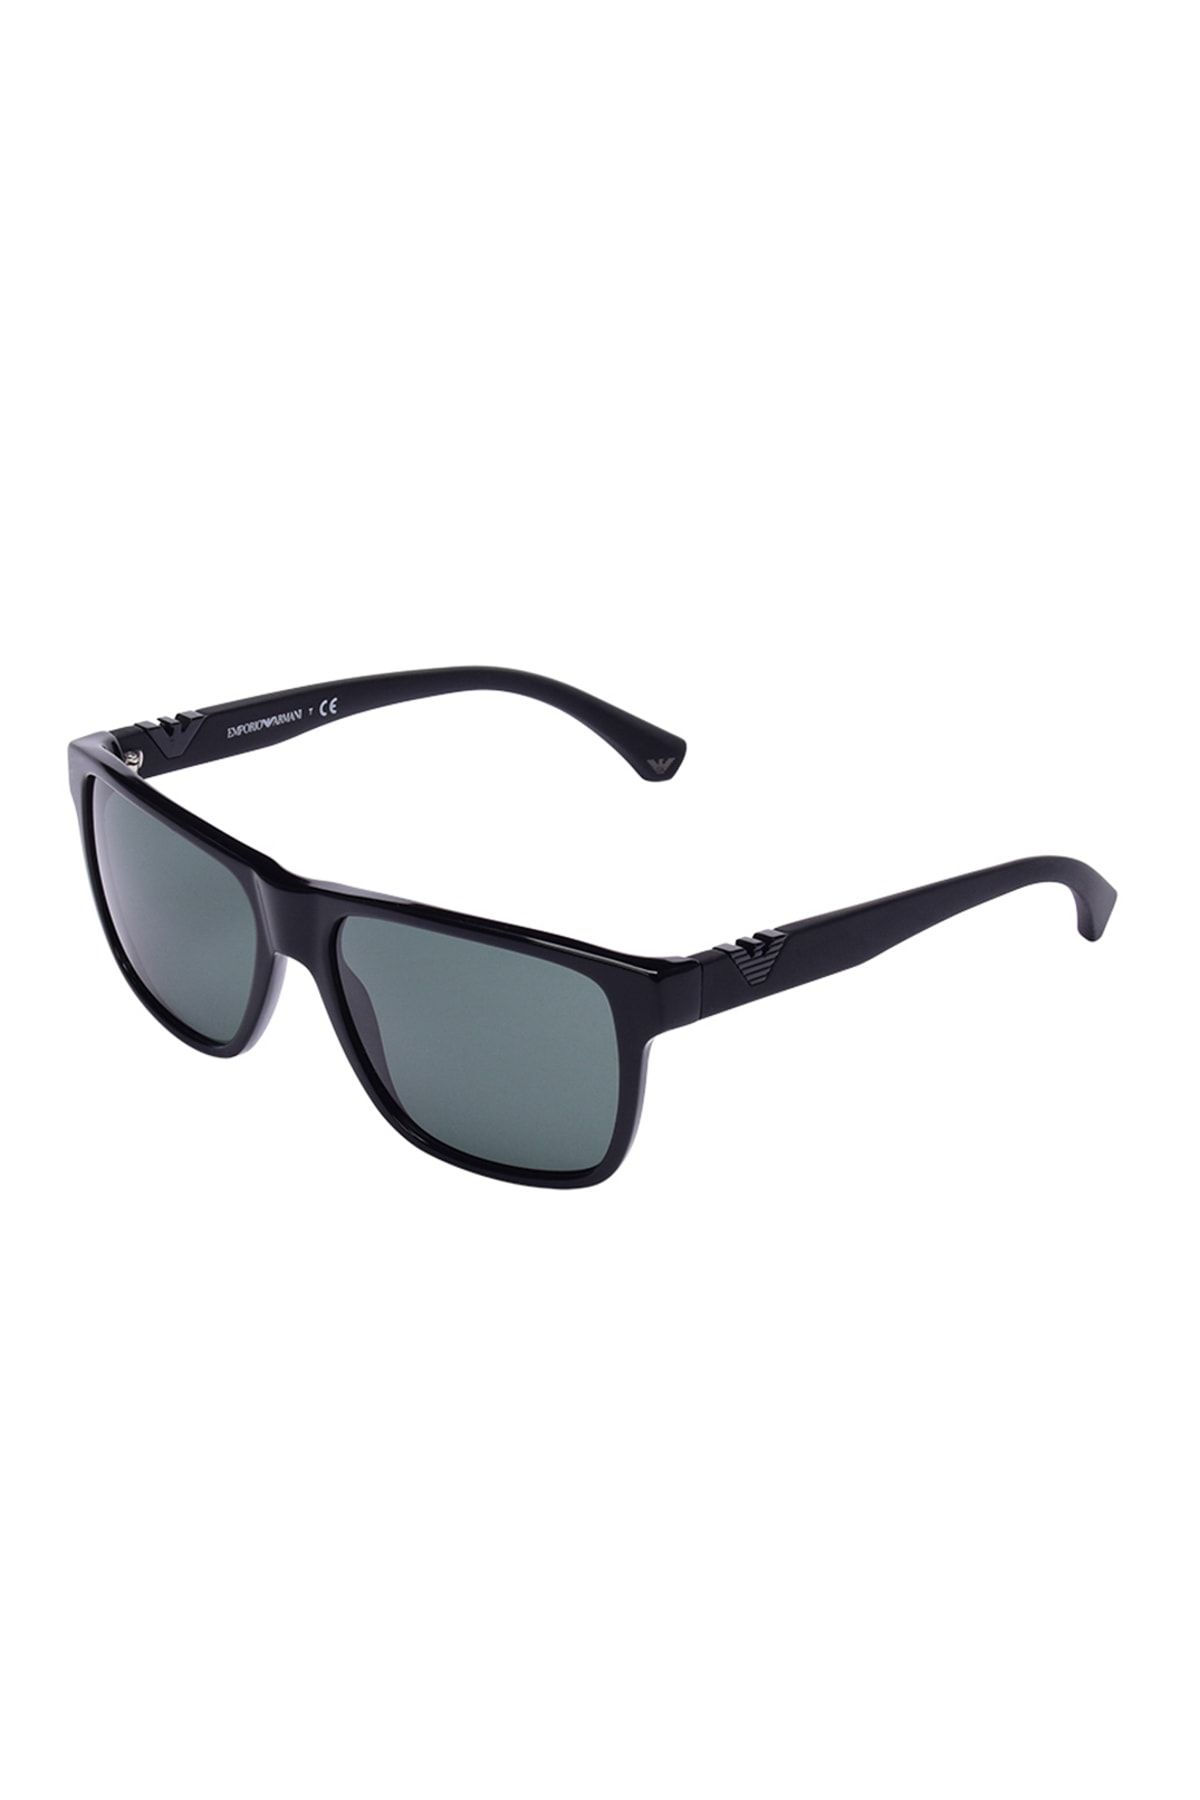 Emporio Armani Erkek Güneş Gözlüğü EA4035 501771 58 Fiyatı, Yorumları -  Trendyol